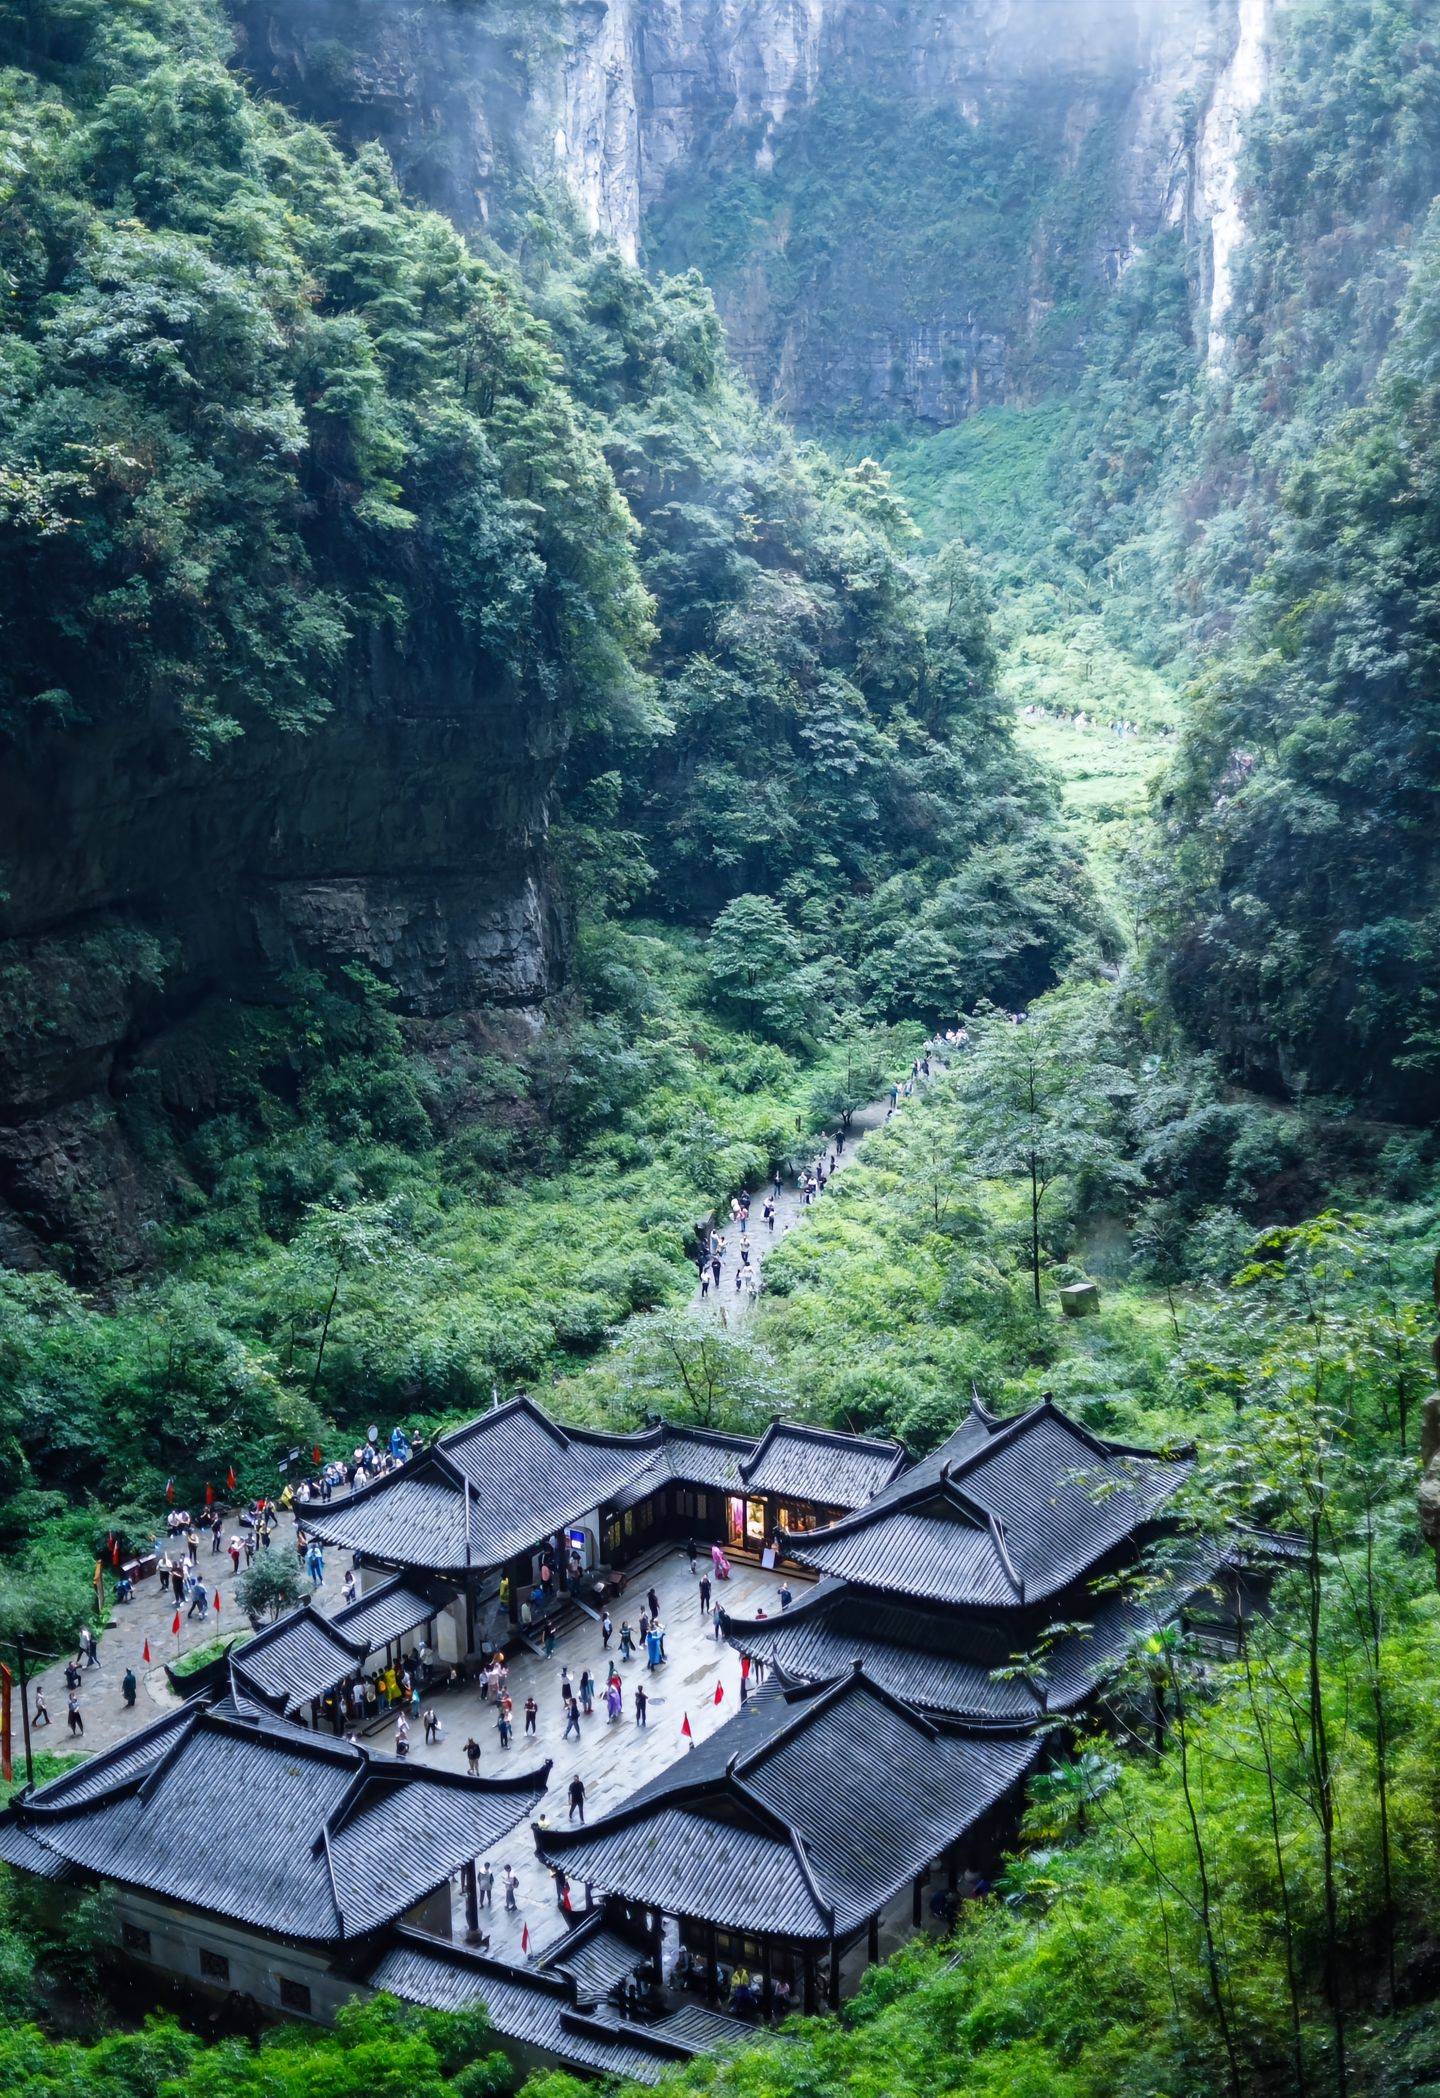 重庆旅游最好季节是几月 ,景点攻略干货,值得收藏,内附行程